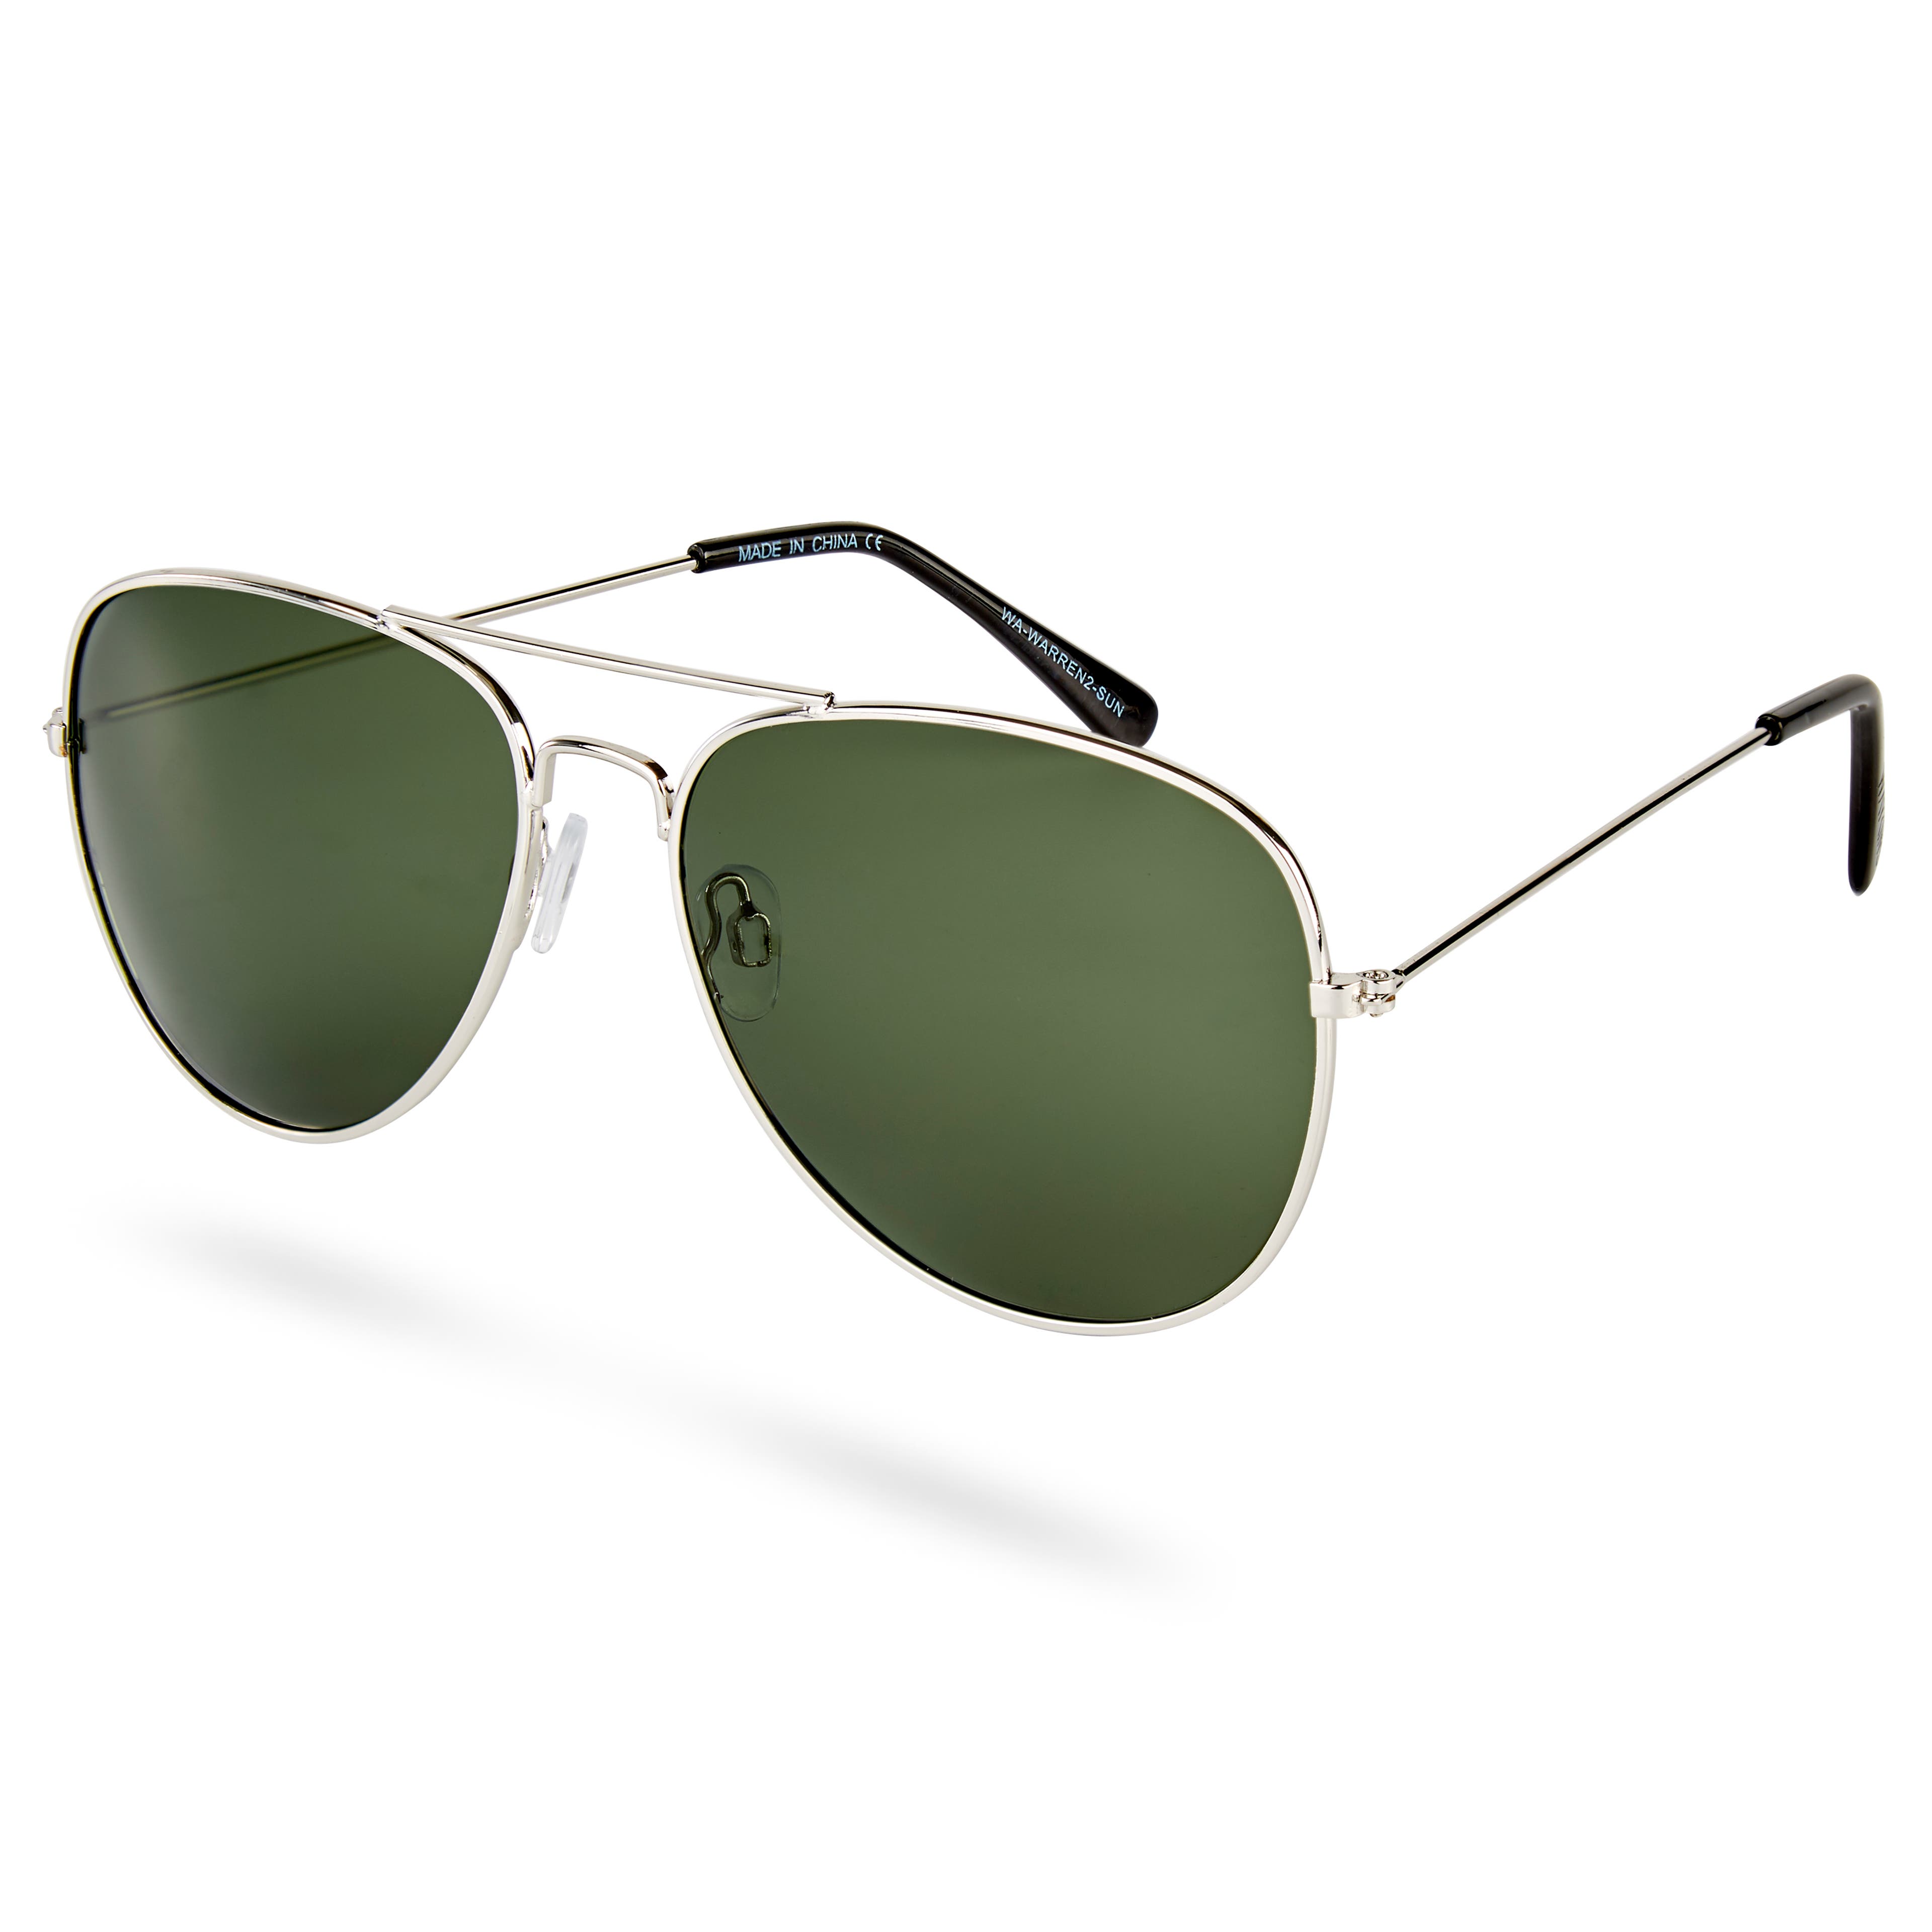 Авиаторски слънчеви очила Warren със сребристи рамки и зелени стъкла